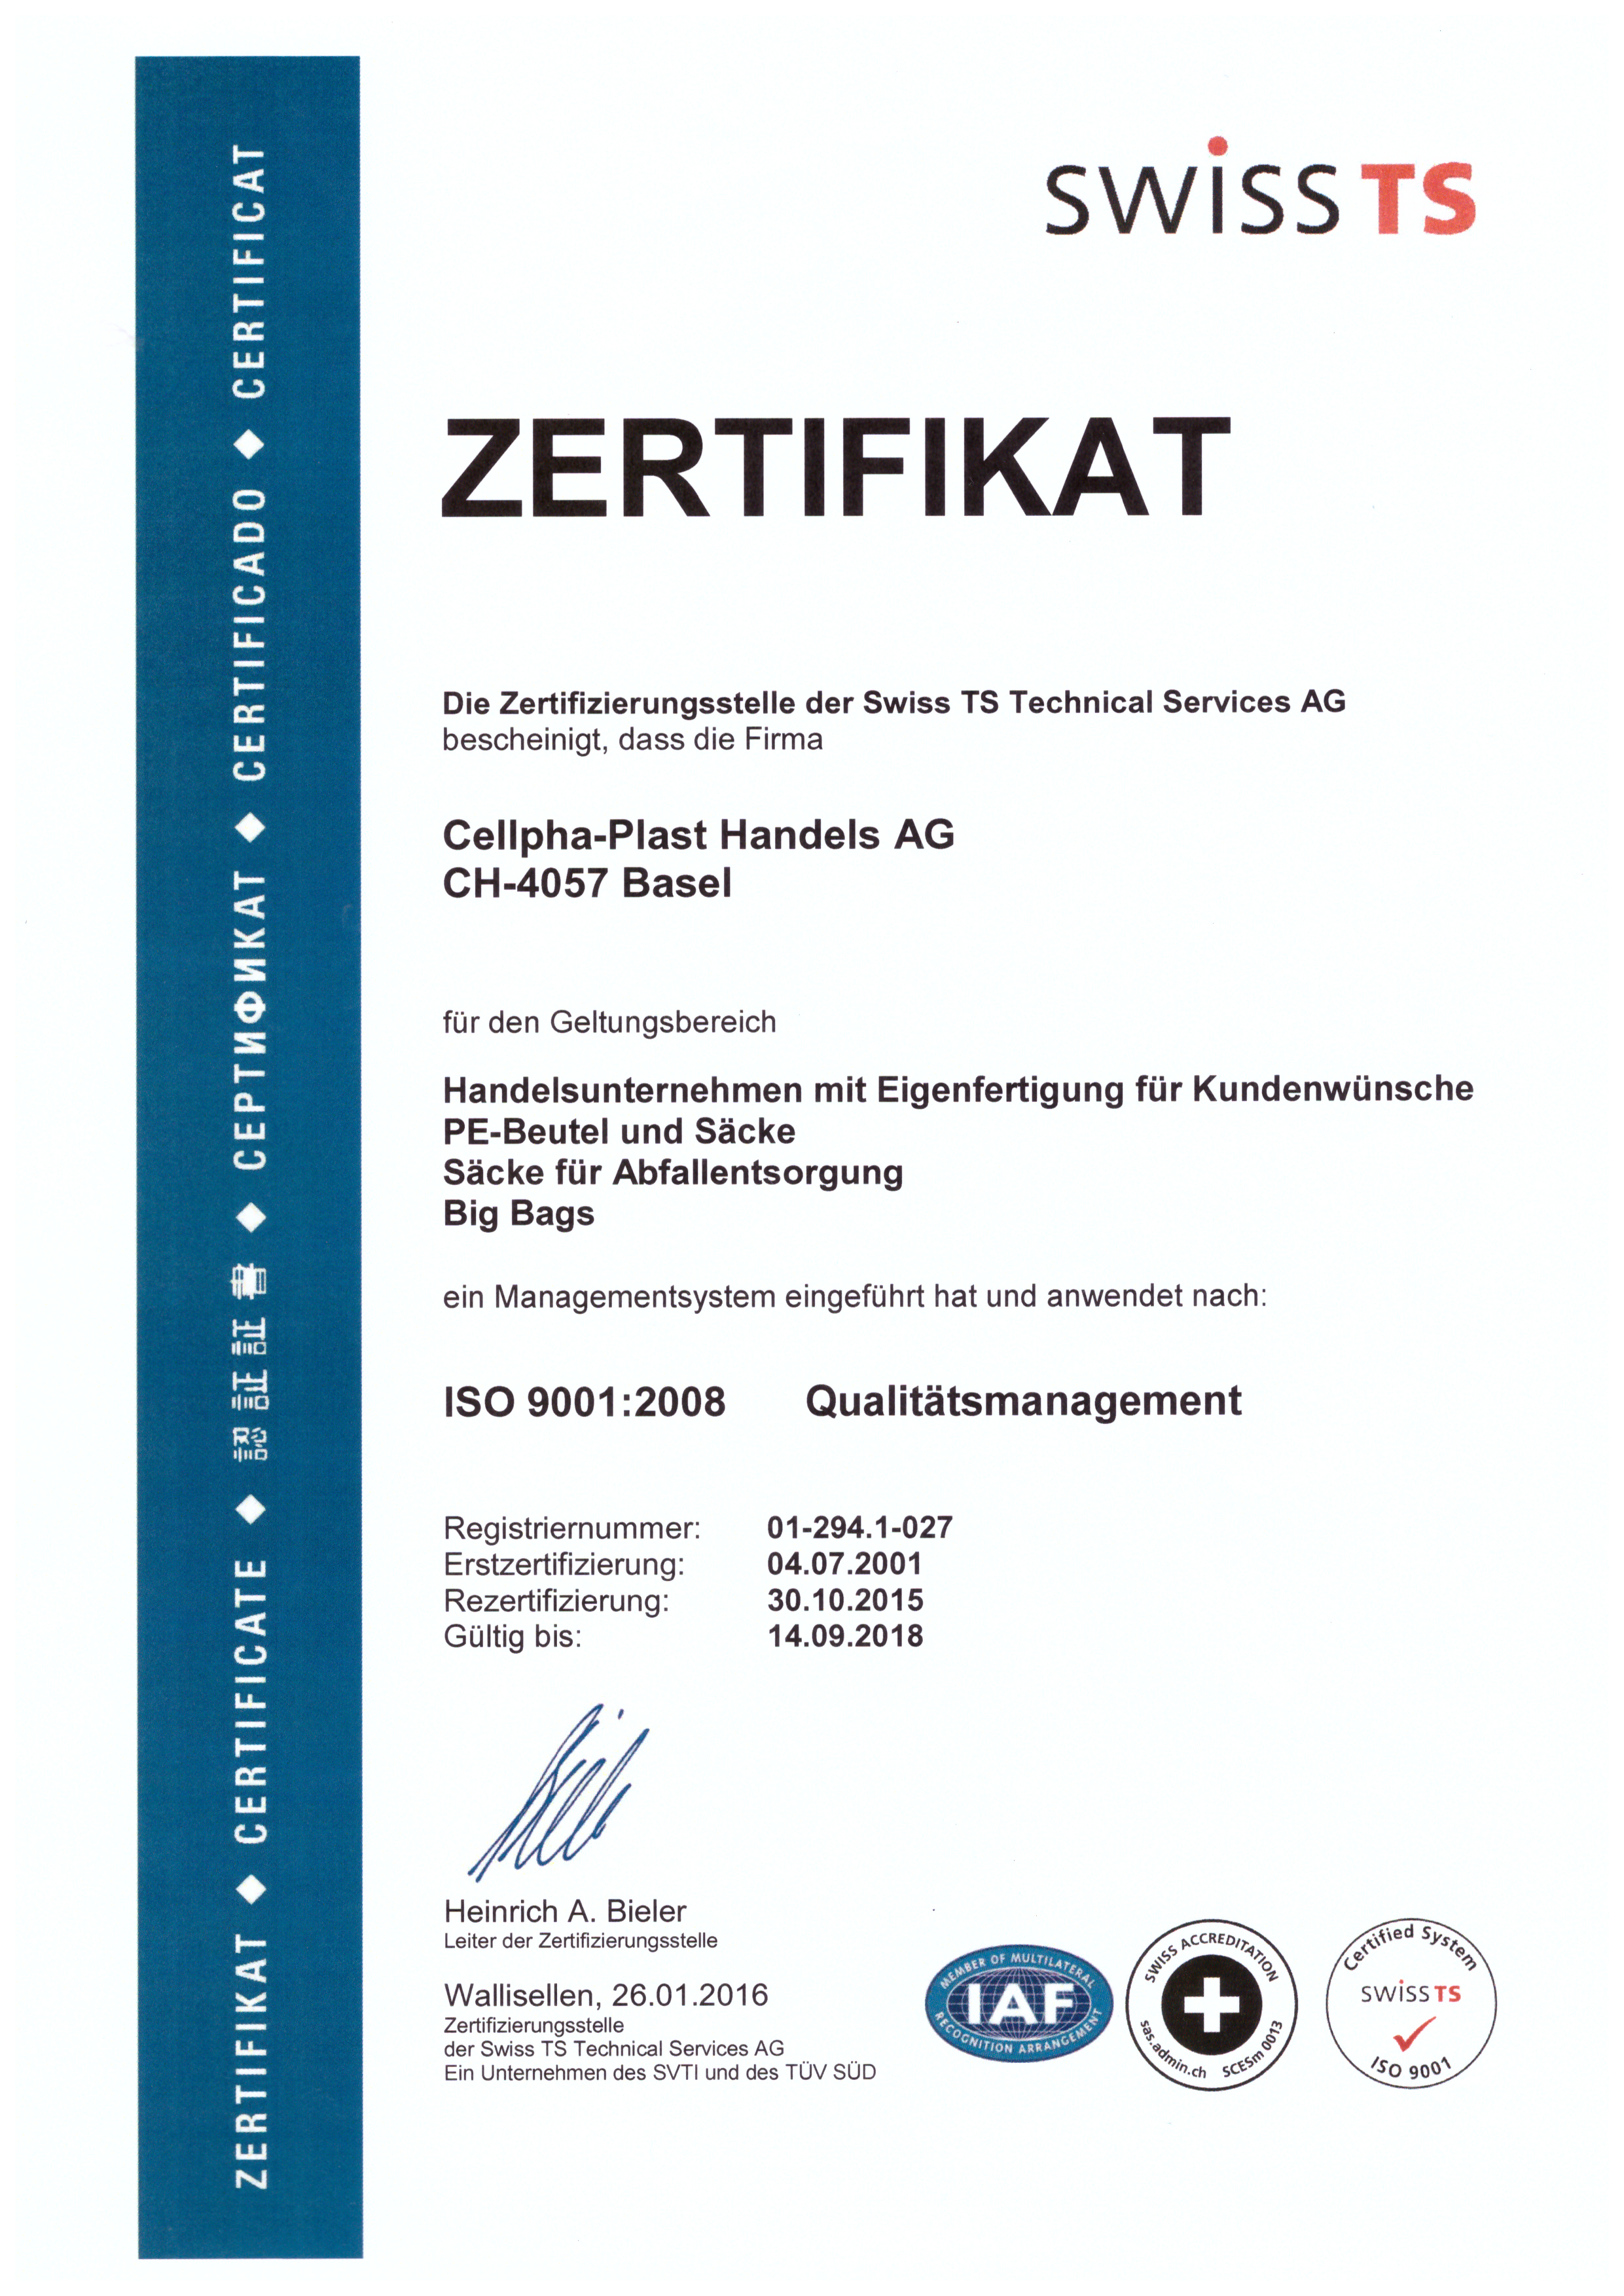 Zertifikat Swiss TS 2016 klein.jpg